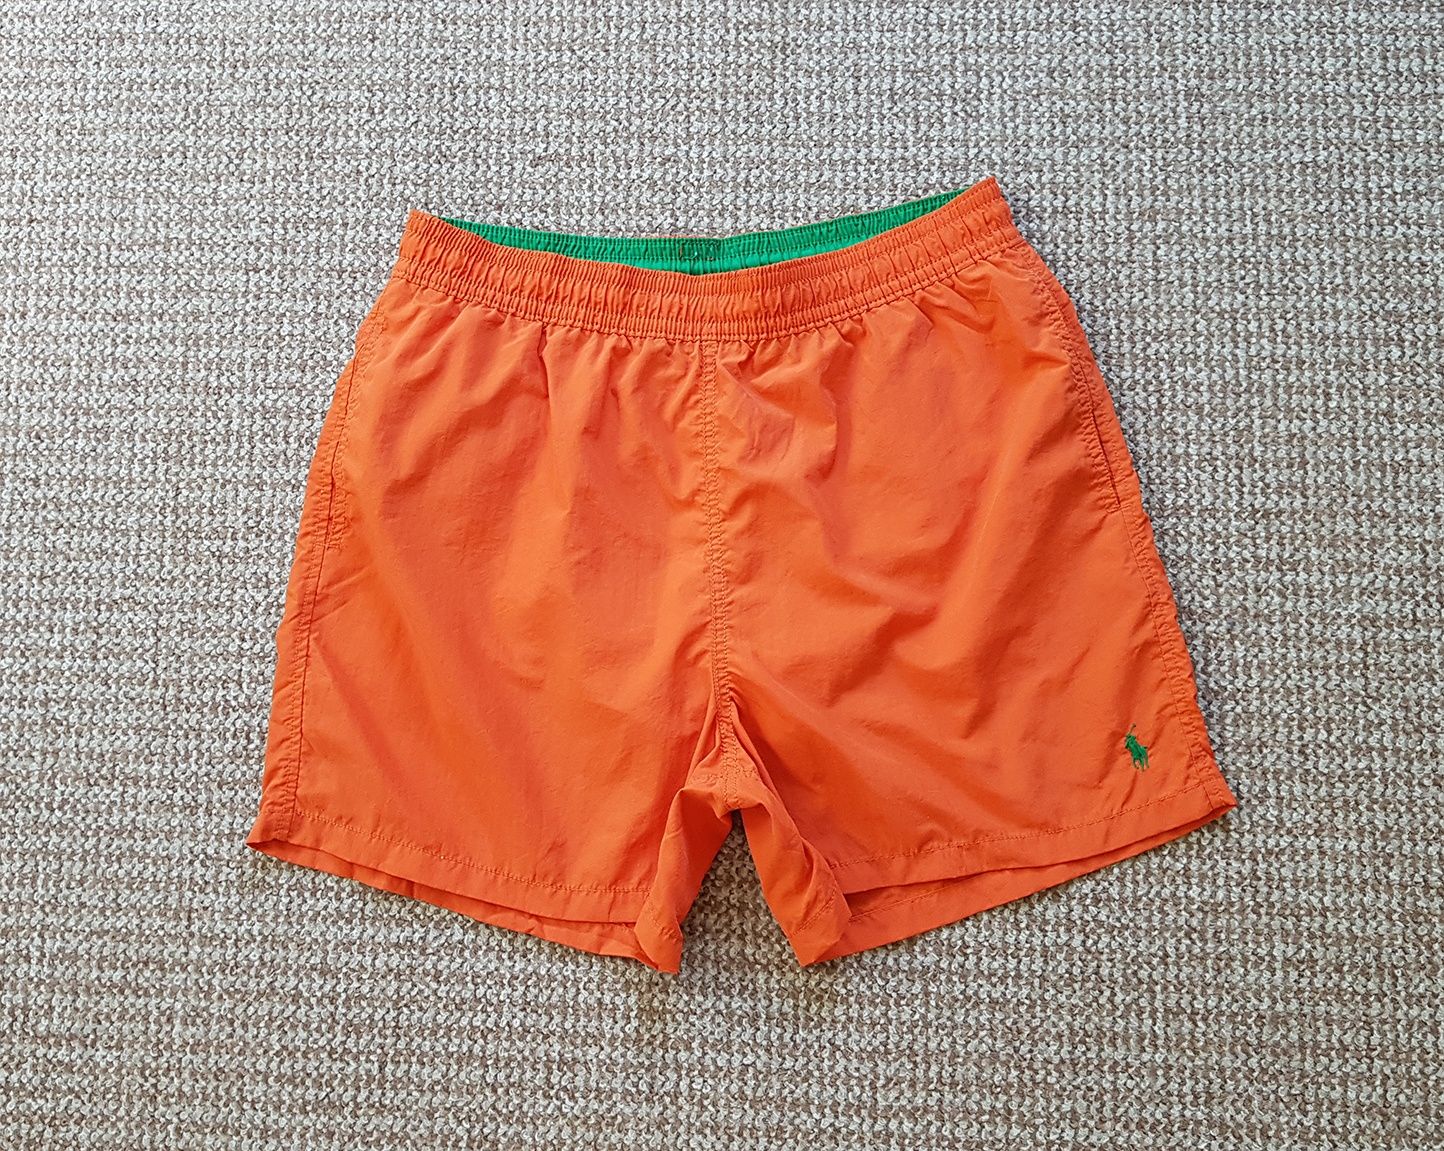 RALPH LAUREN Polo шорты пляжные оранжевые оригинал L